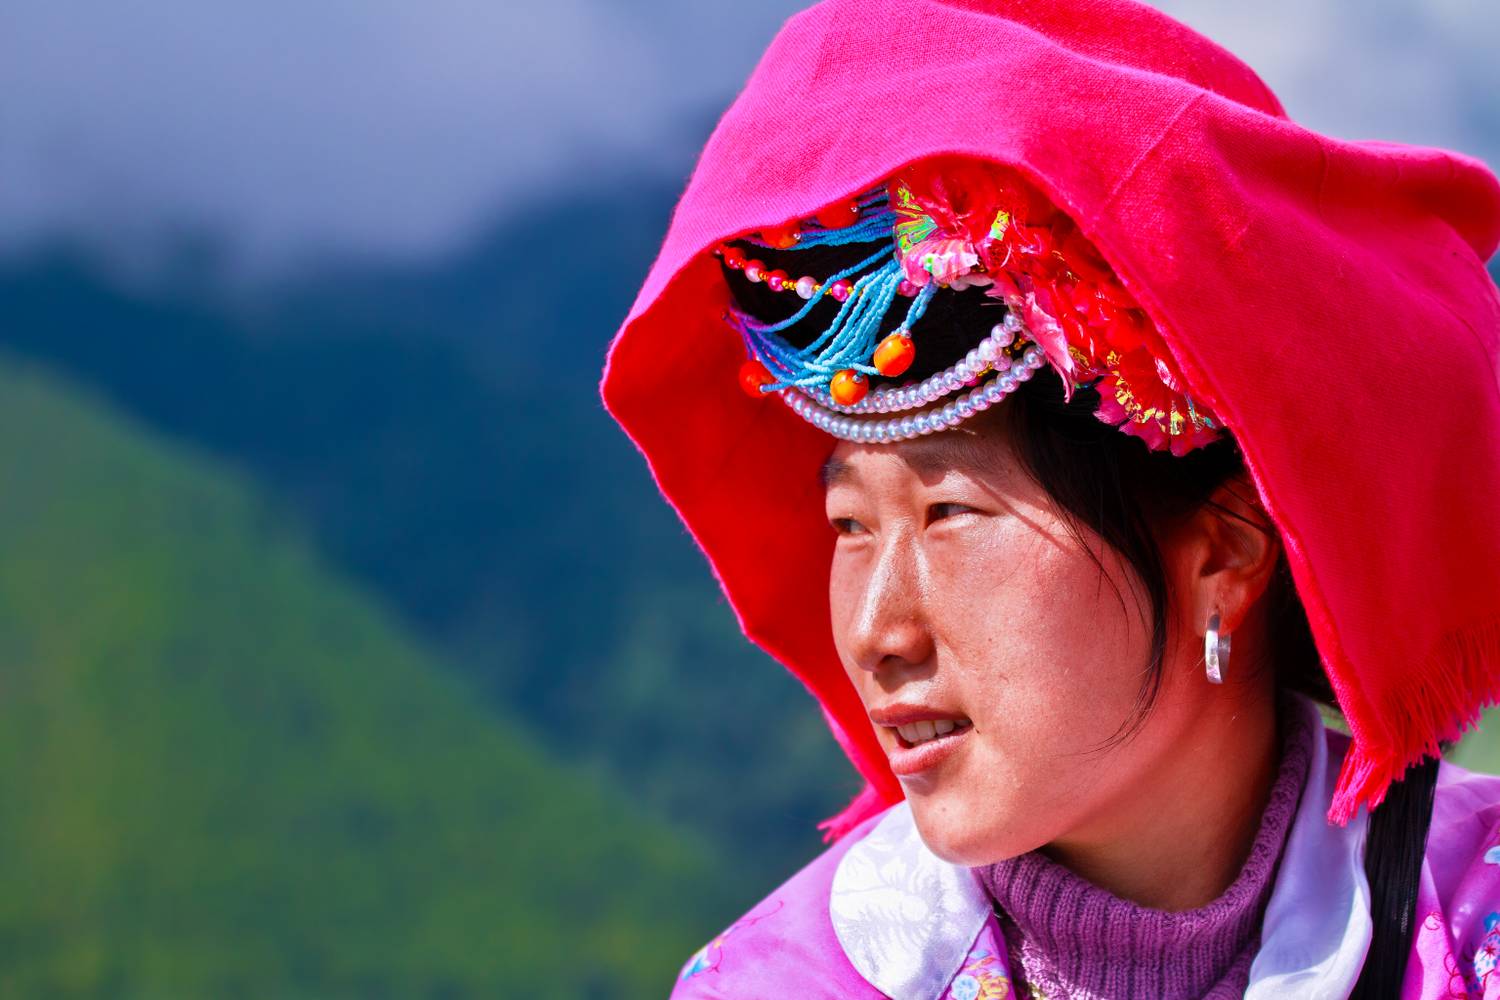 A tibeti határ közelében élő muszuó nép körülbelül 40 ezer főt számlál. Ebben a nőközpontú társadalomban a családfő szerepét a nagymama gyakorolja, a házasság pedig sokkal kevésbé fontos, mint máshol. A férfiak általában a gyermeknevelésben sem vehetnek részt, a fiatalokat az anyai háztartásban, külön nevelik az apjuktól.